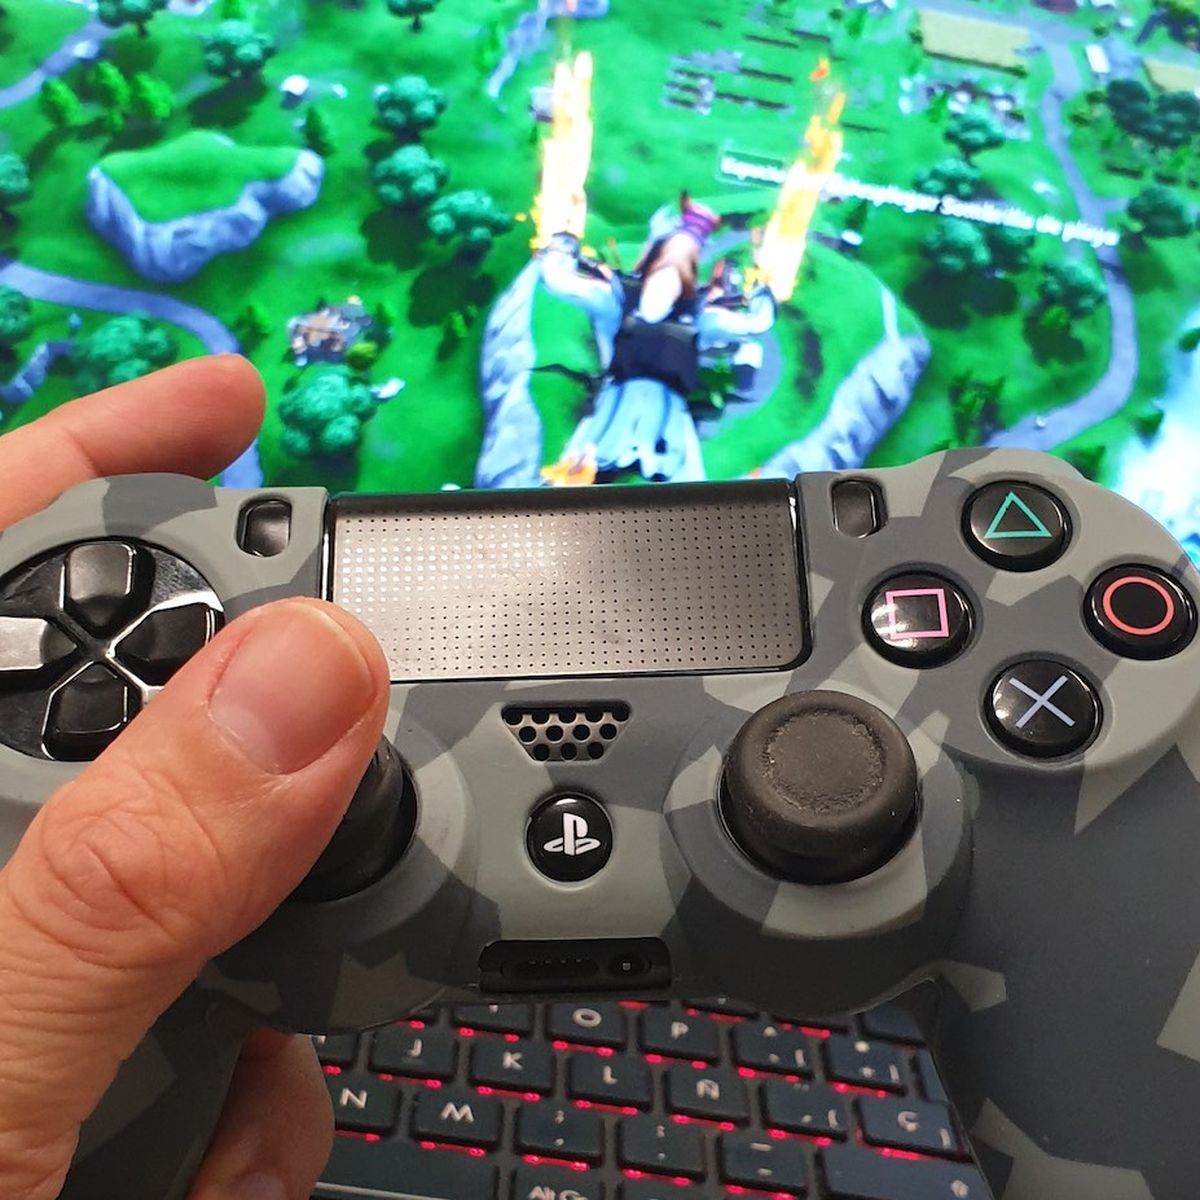 Usar el control de PS4 DualShock 4 con el PlayStation 3 sin cable